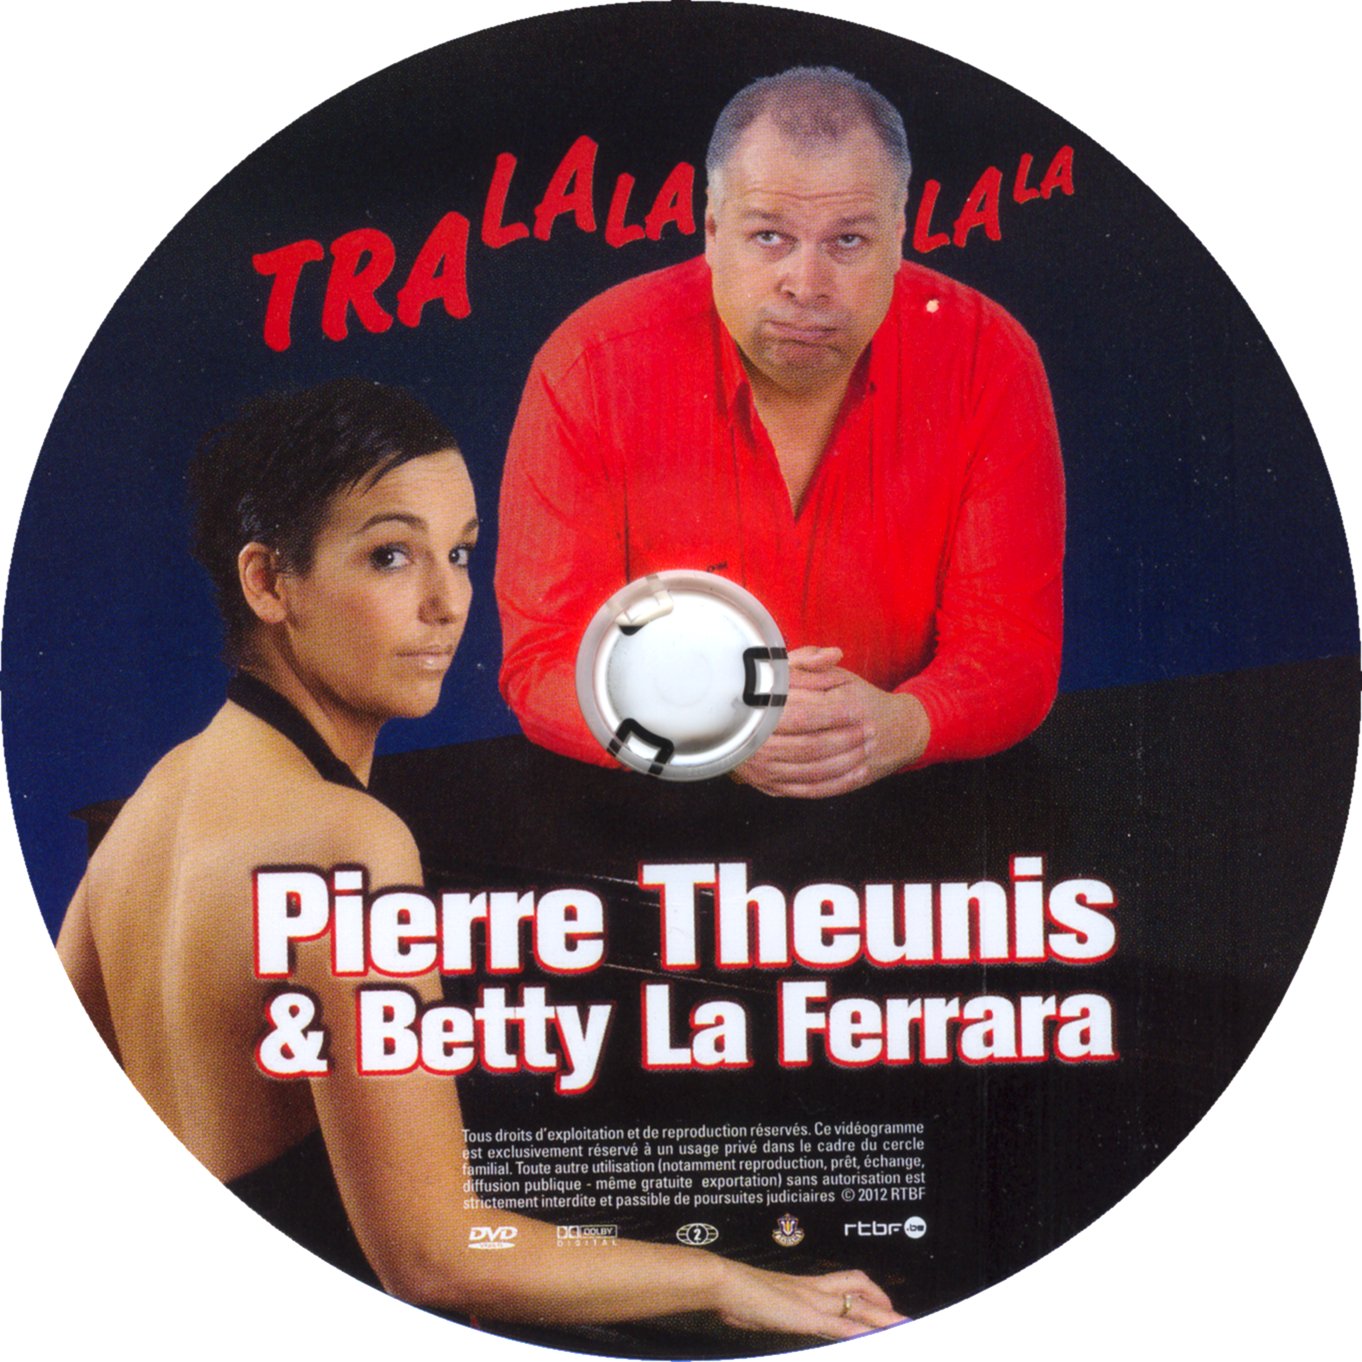 Pierre Theunis & betty la ferrara